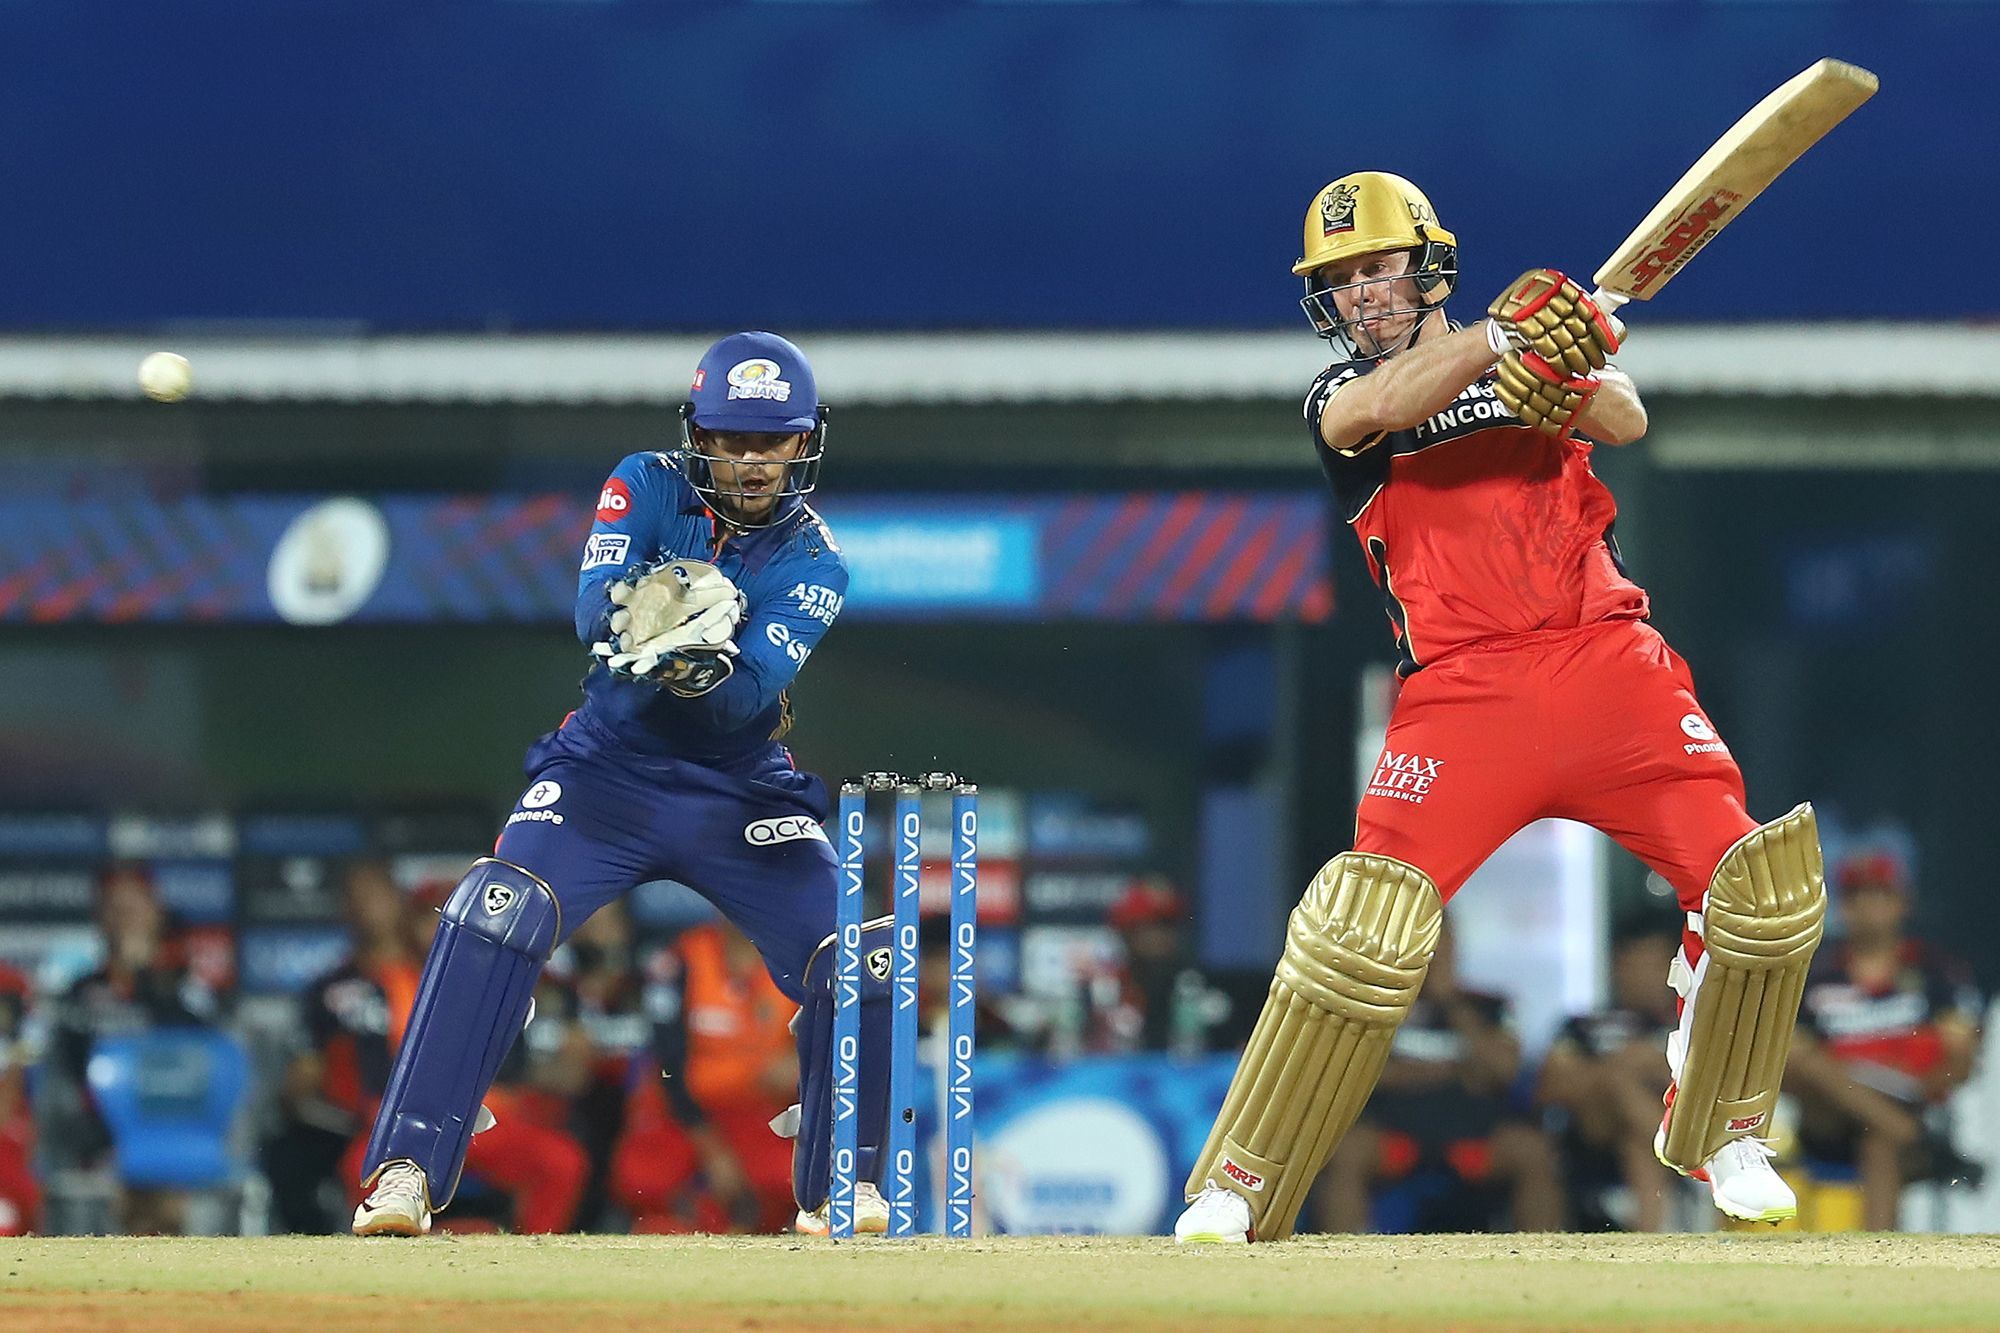 AB de Villiers scored 48 runs to help RCB win against MI | BCCI/IPL